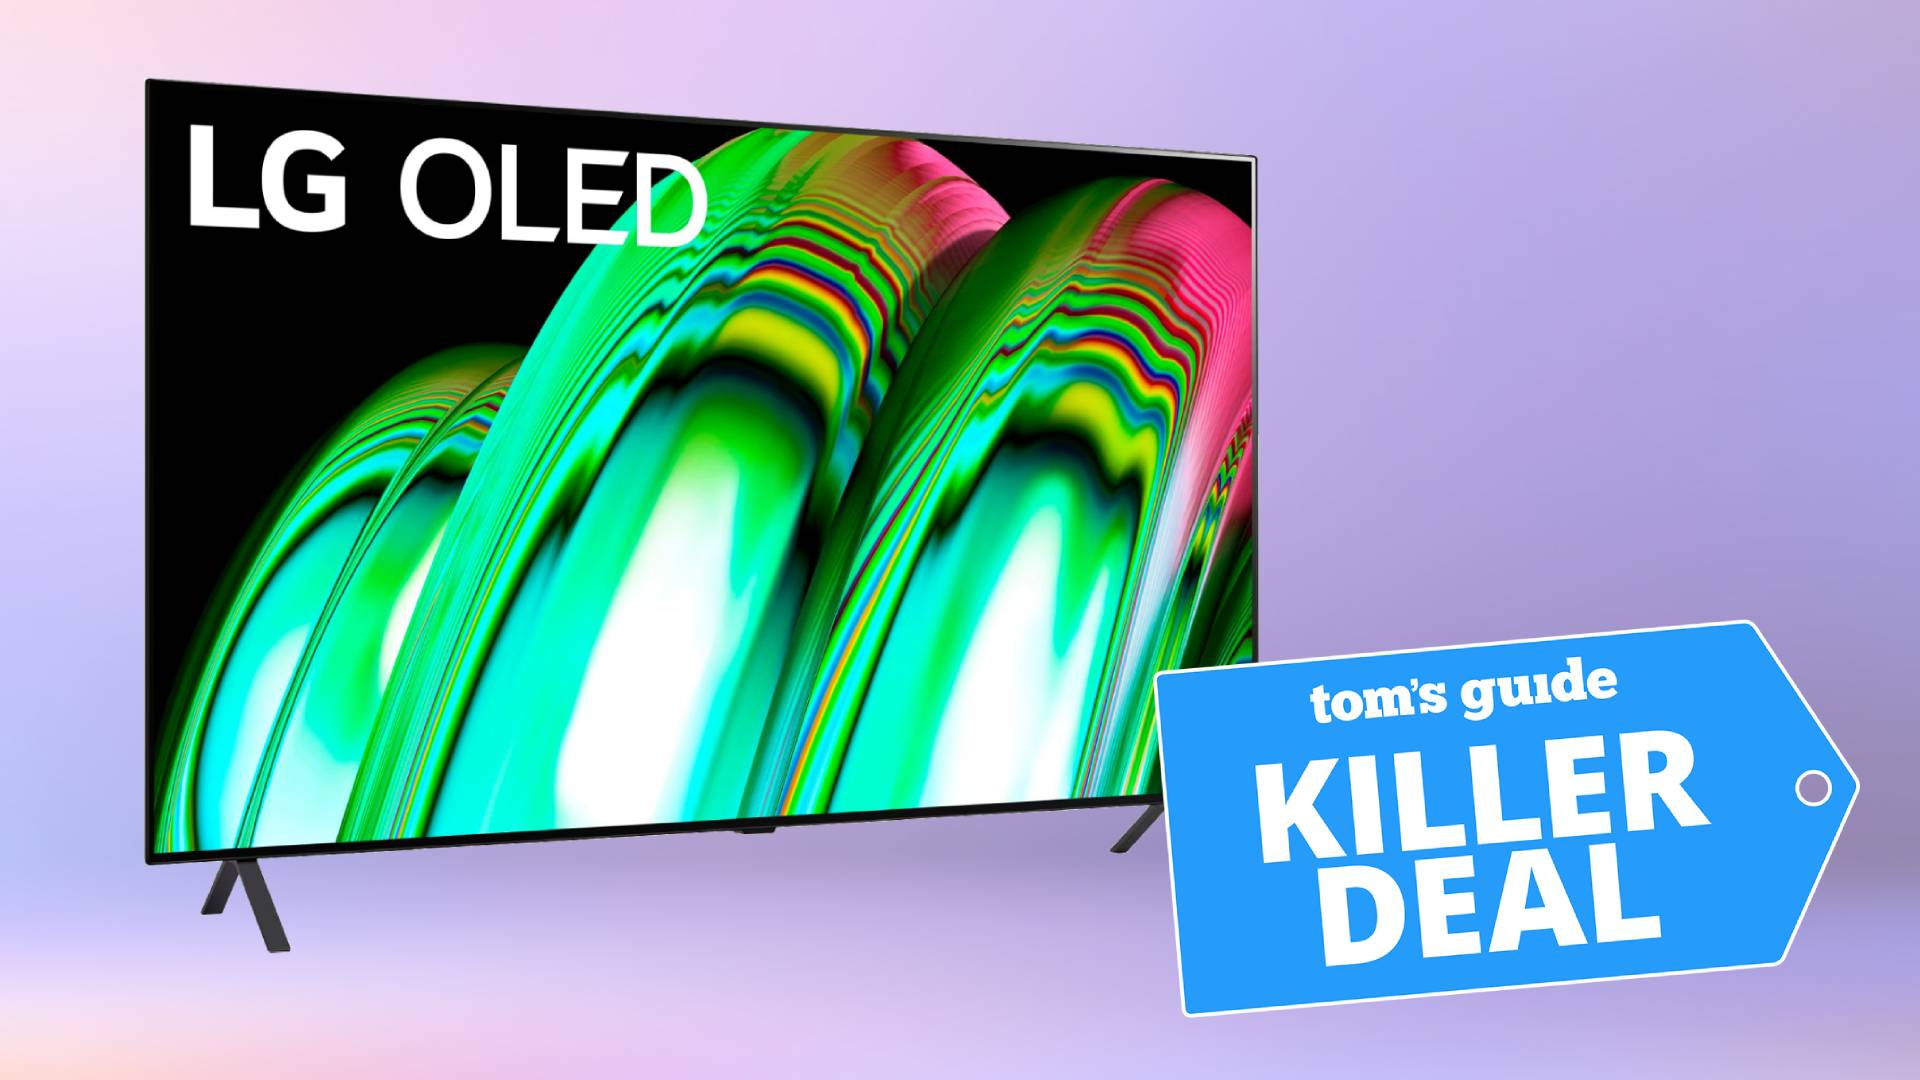 Porträt des LG A2 OLED 4K-Fernsehers auf violettem Hintergrund